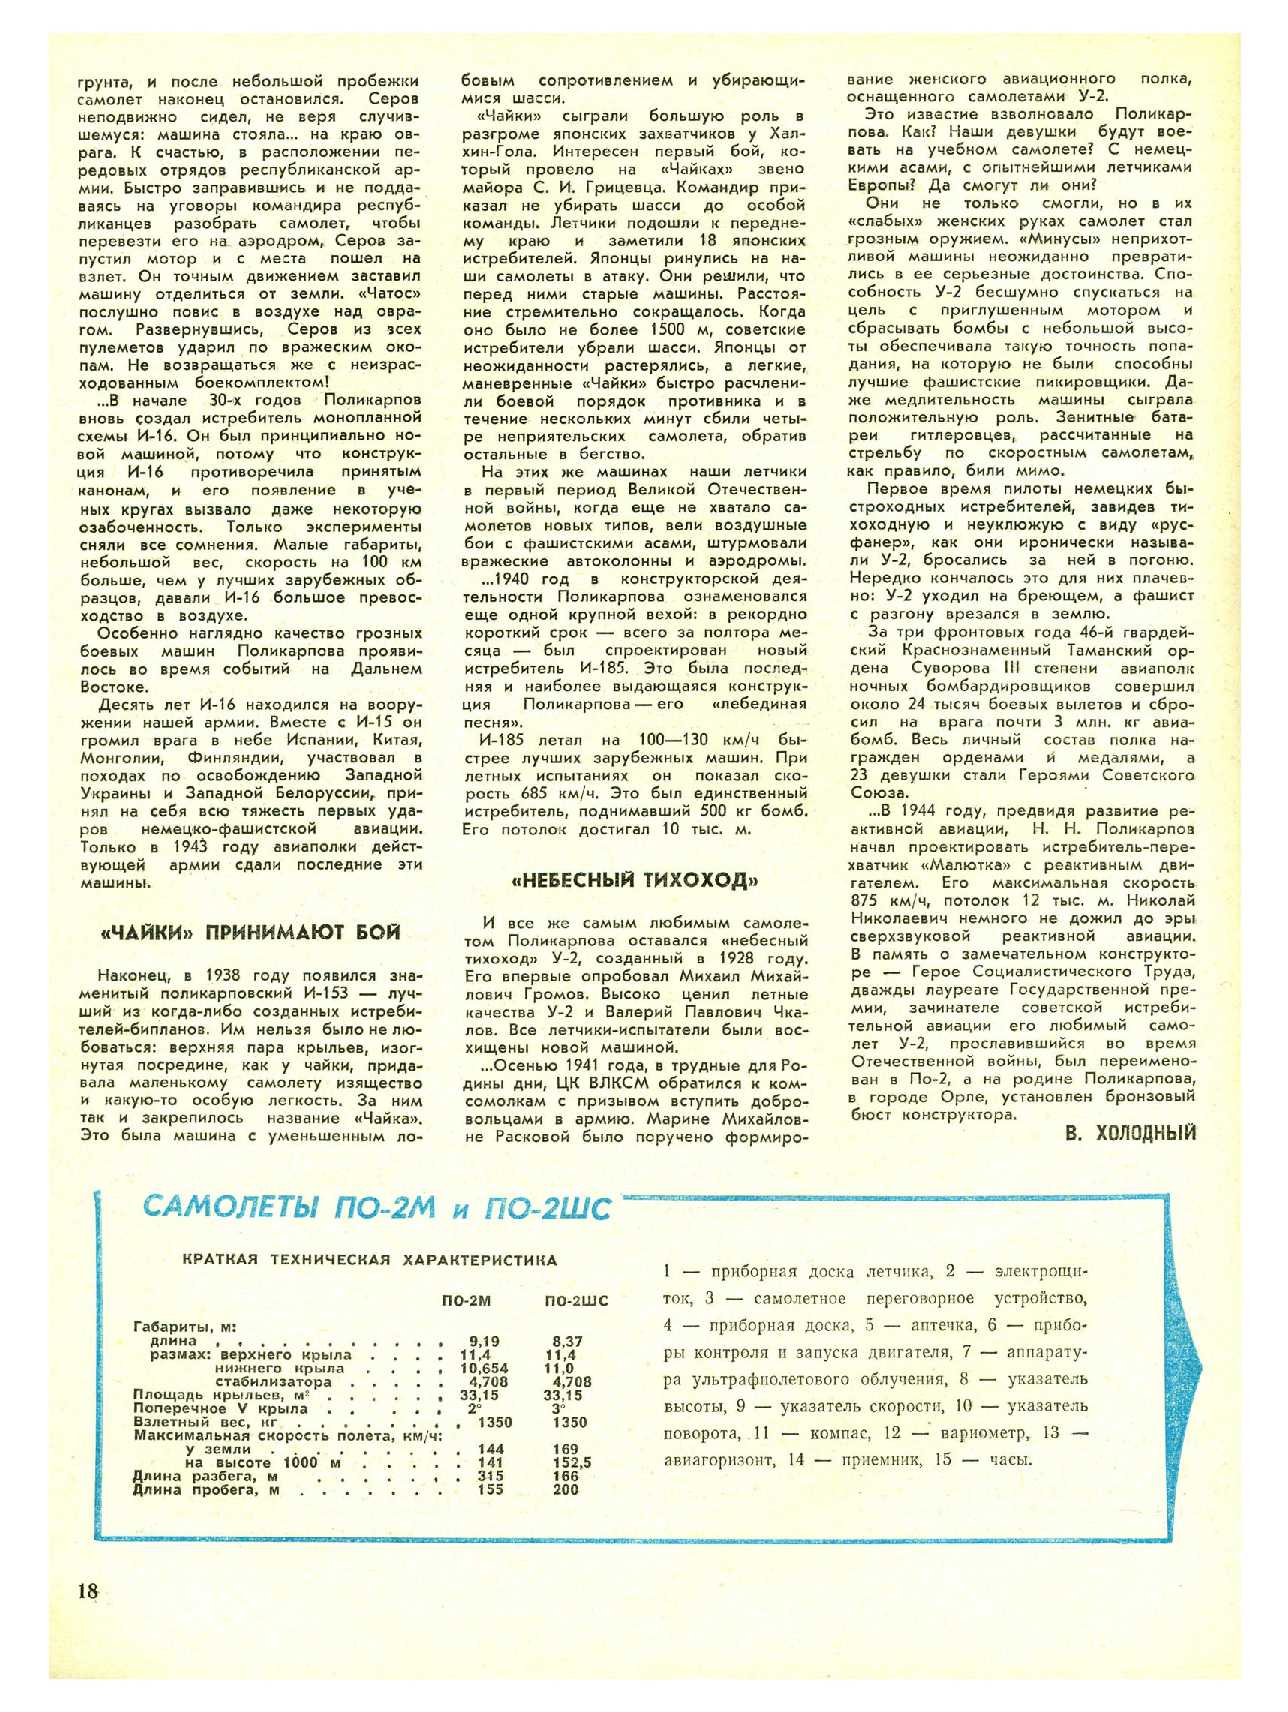 МК 3, 1976, 18 c.